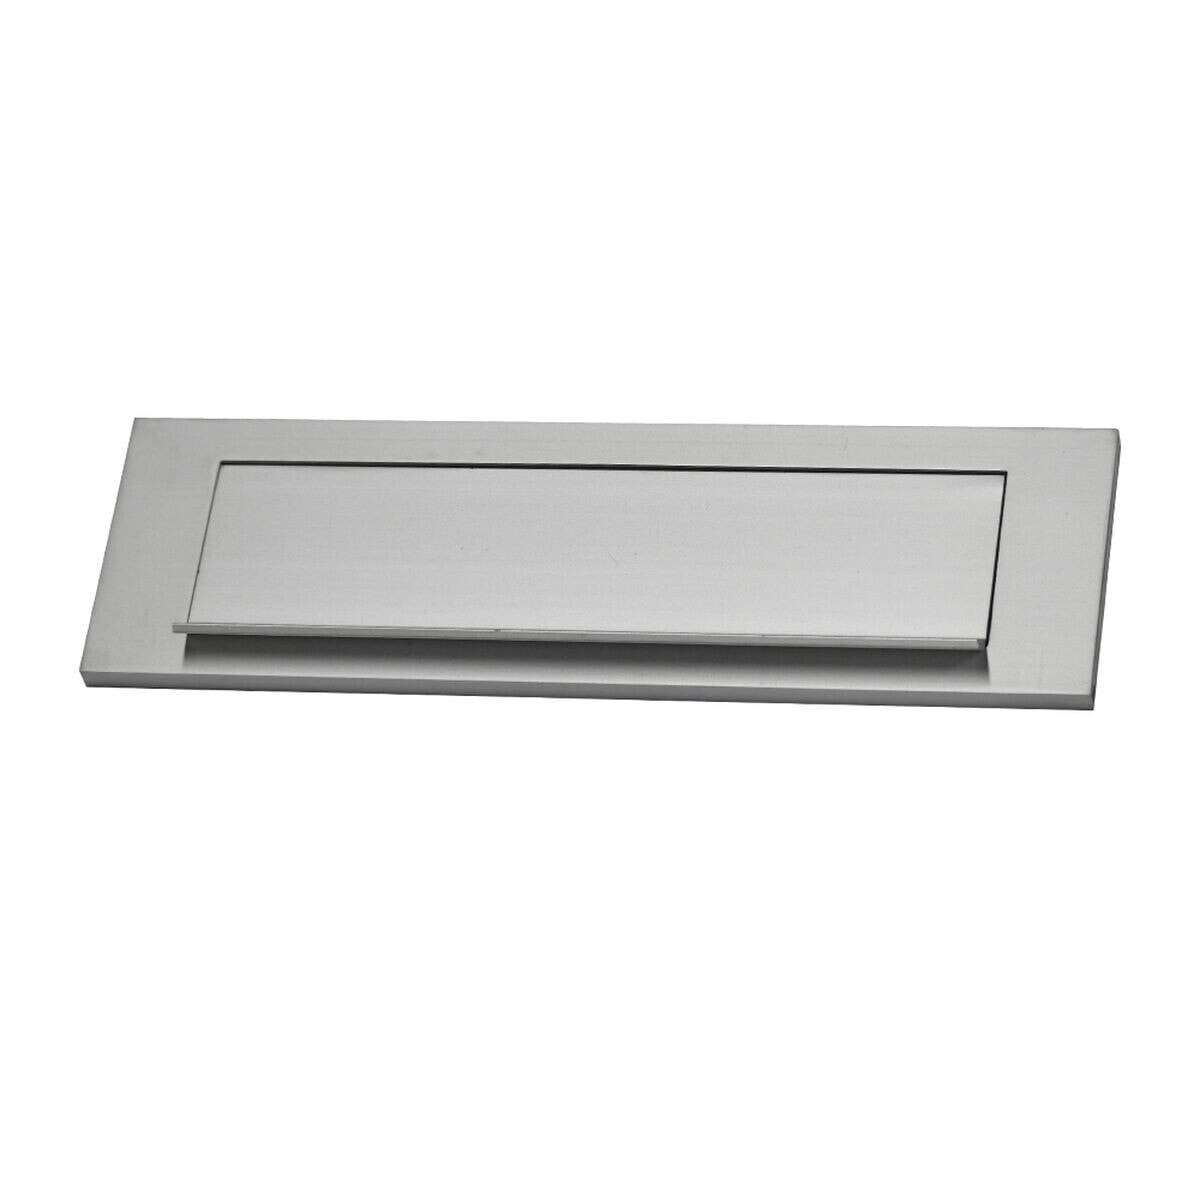 Letterbox plaques EDM 25,4 x 7,5 cm Silver Aluminium